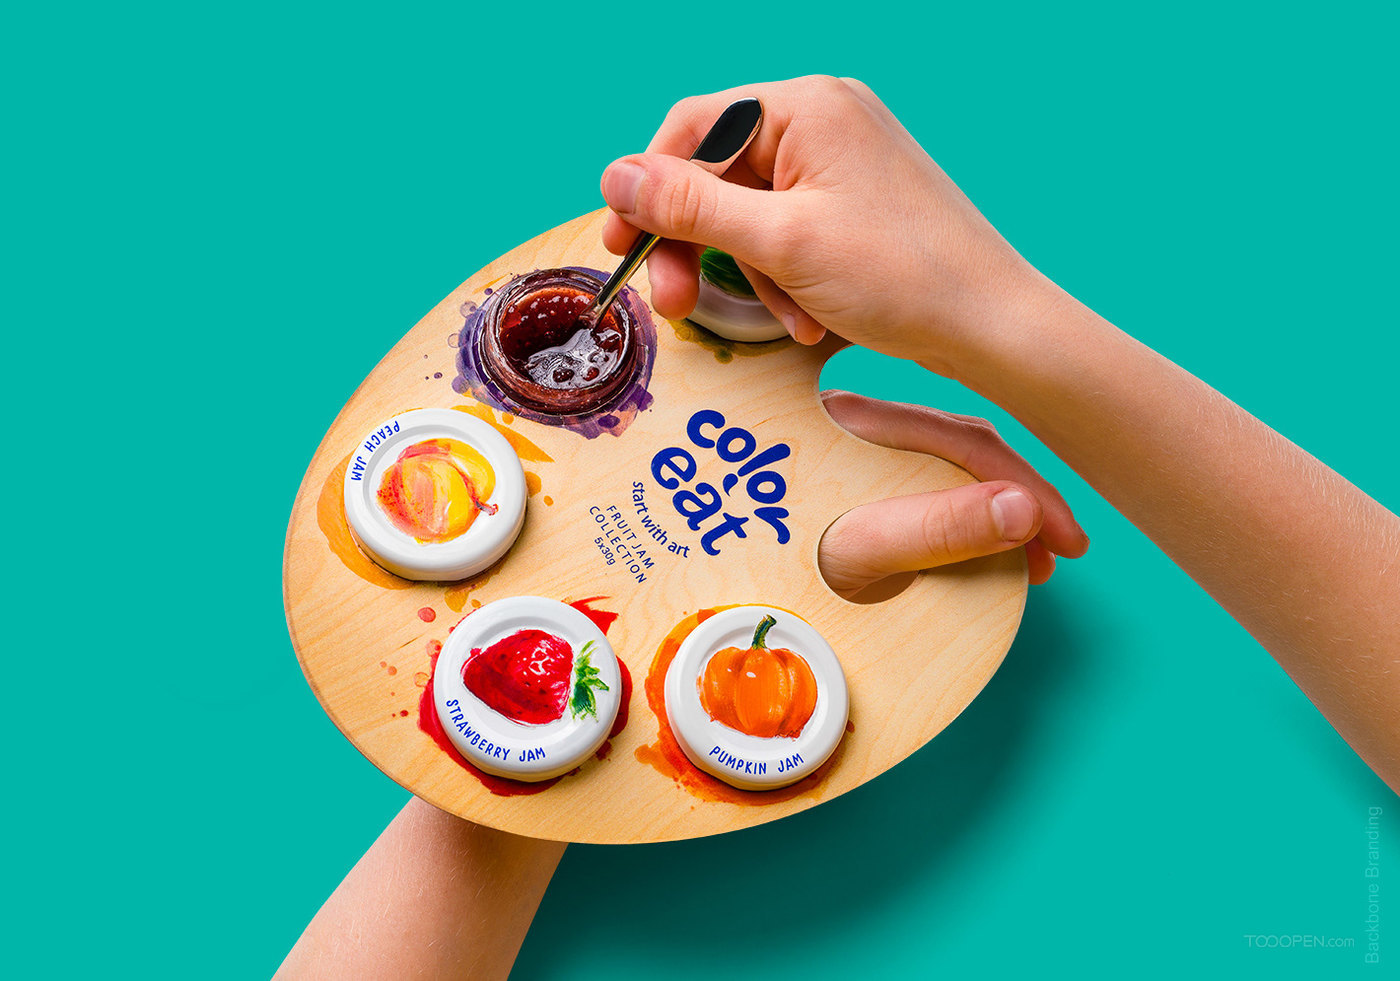 创意五彩画板果酱食品包装设计作品欣赏图片-01